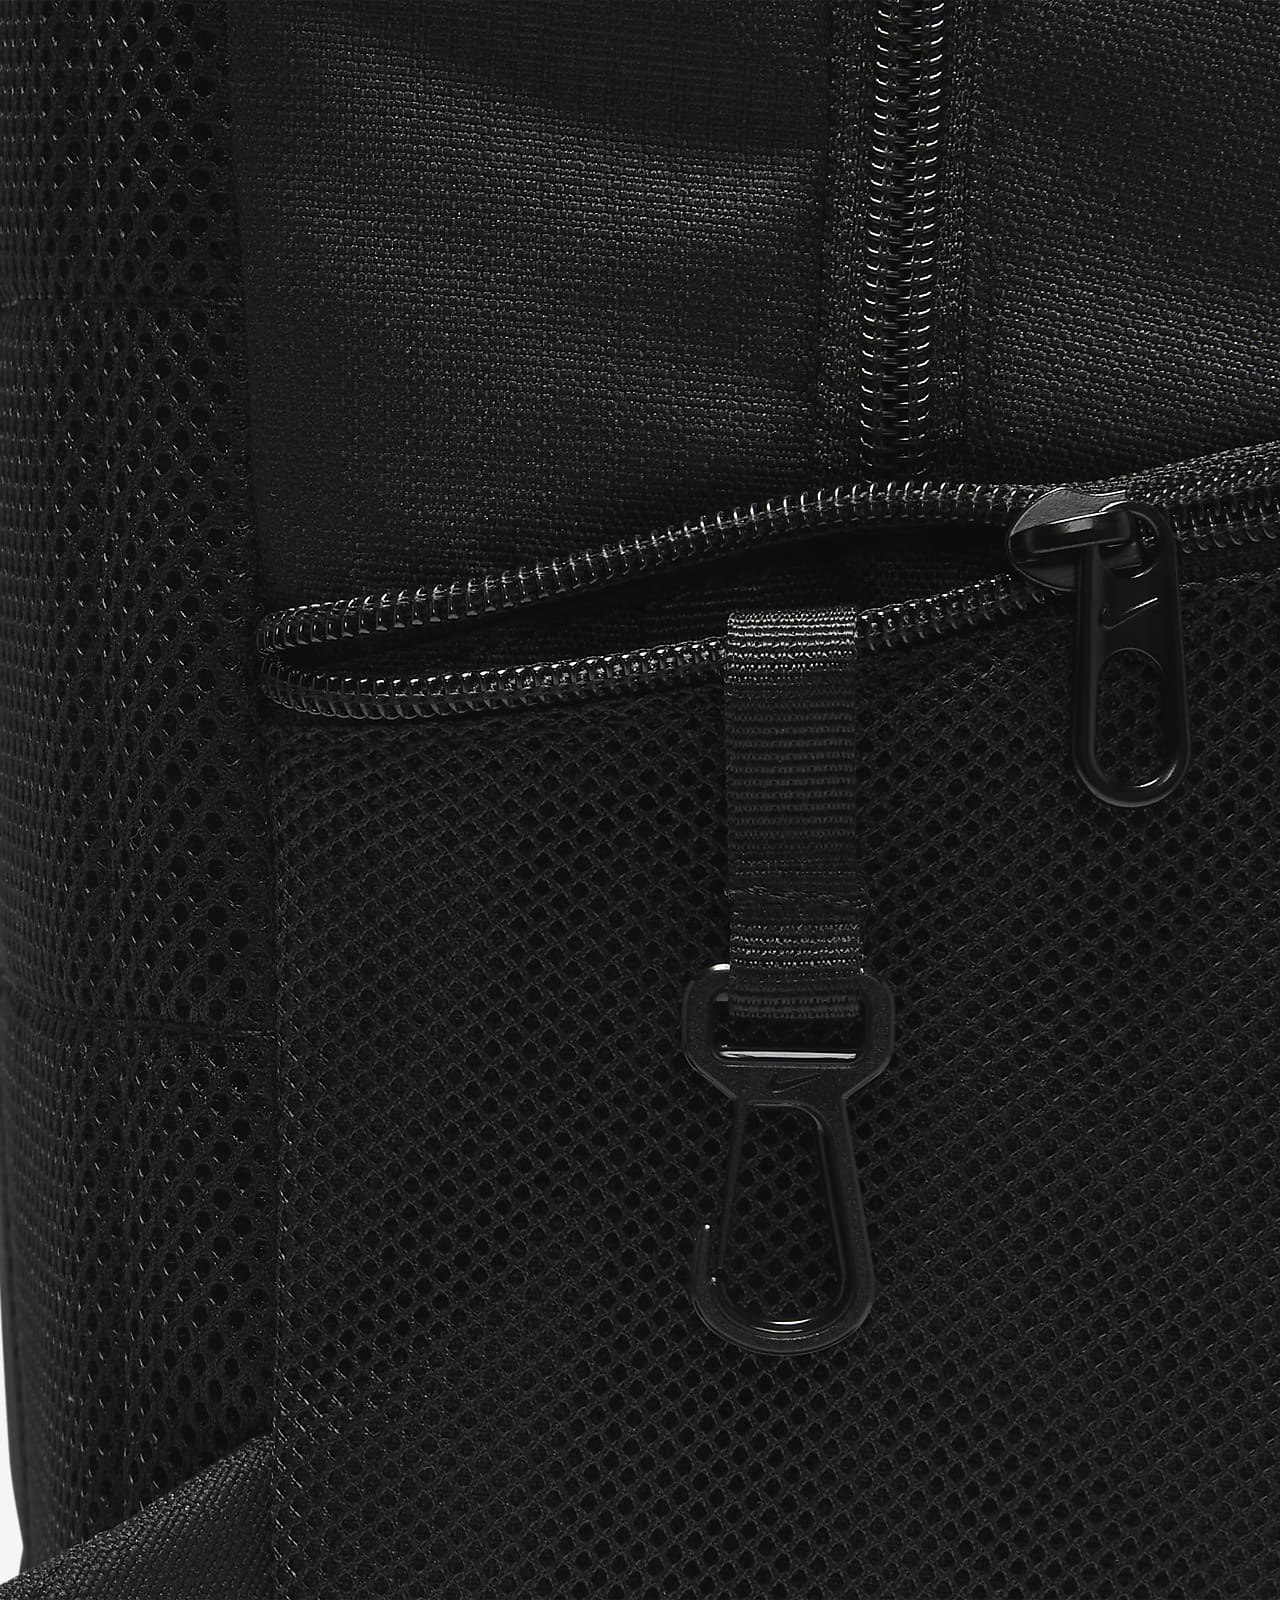 Nike Brasilia 9.5 Training Backpack (Extra Large, 30L).